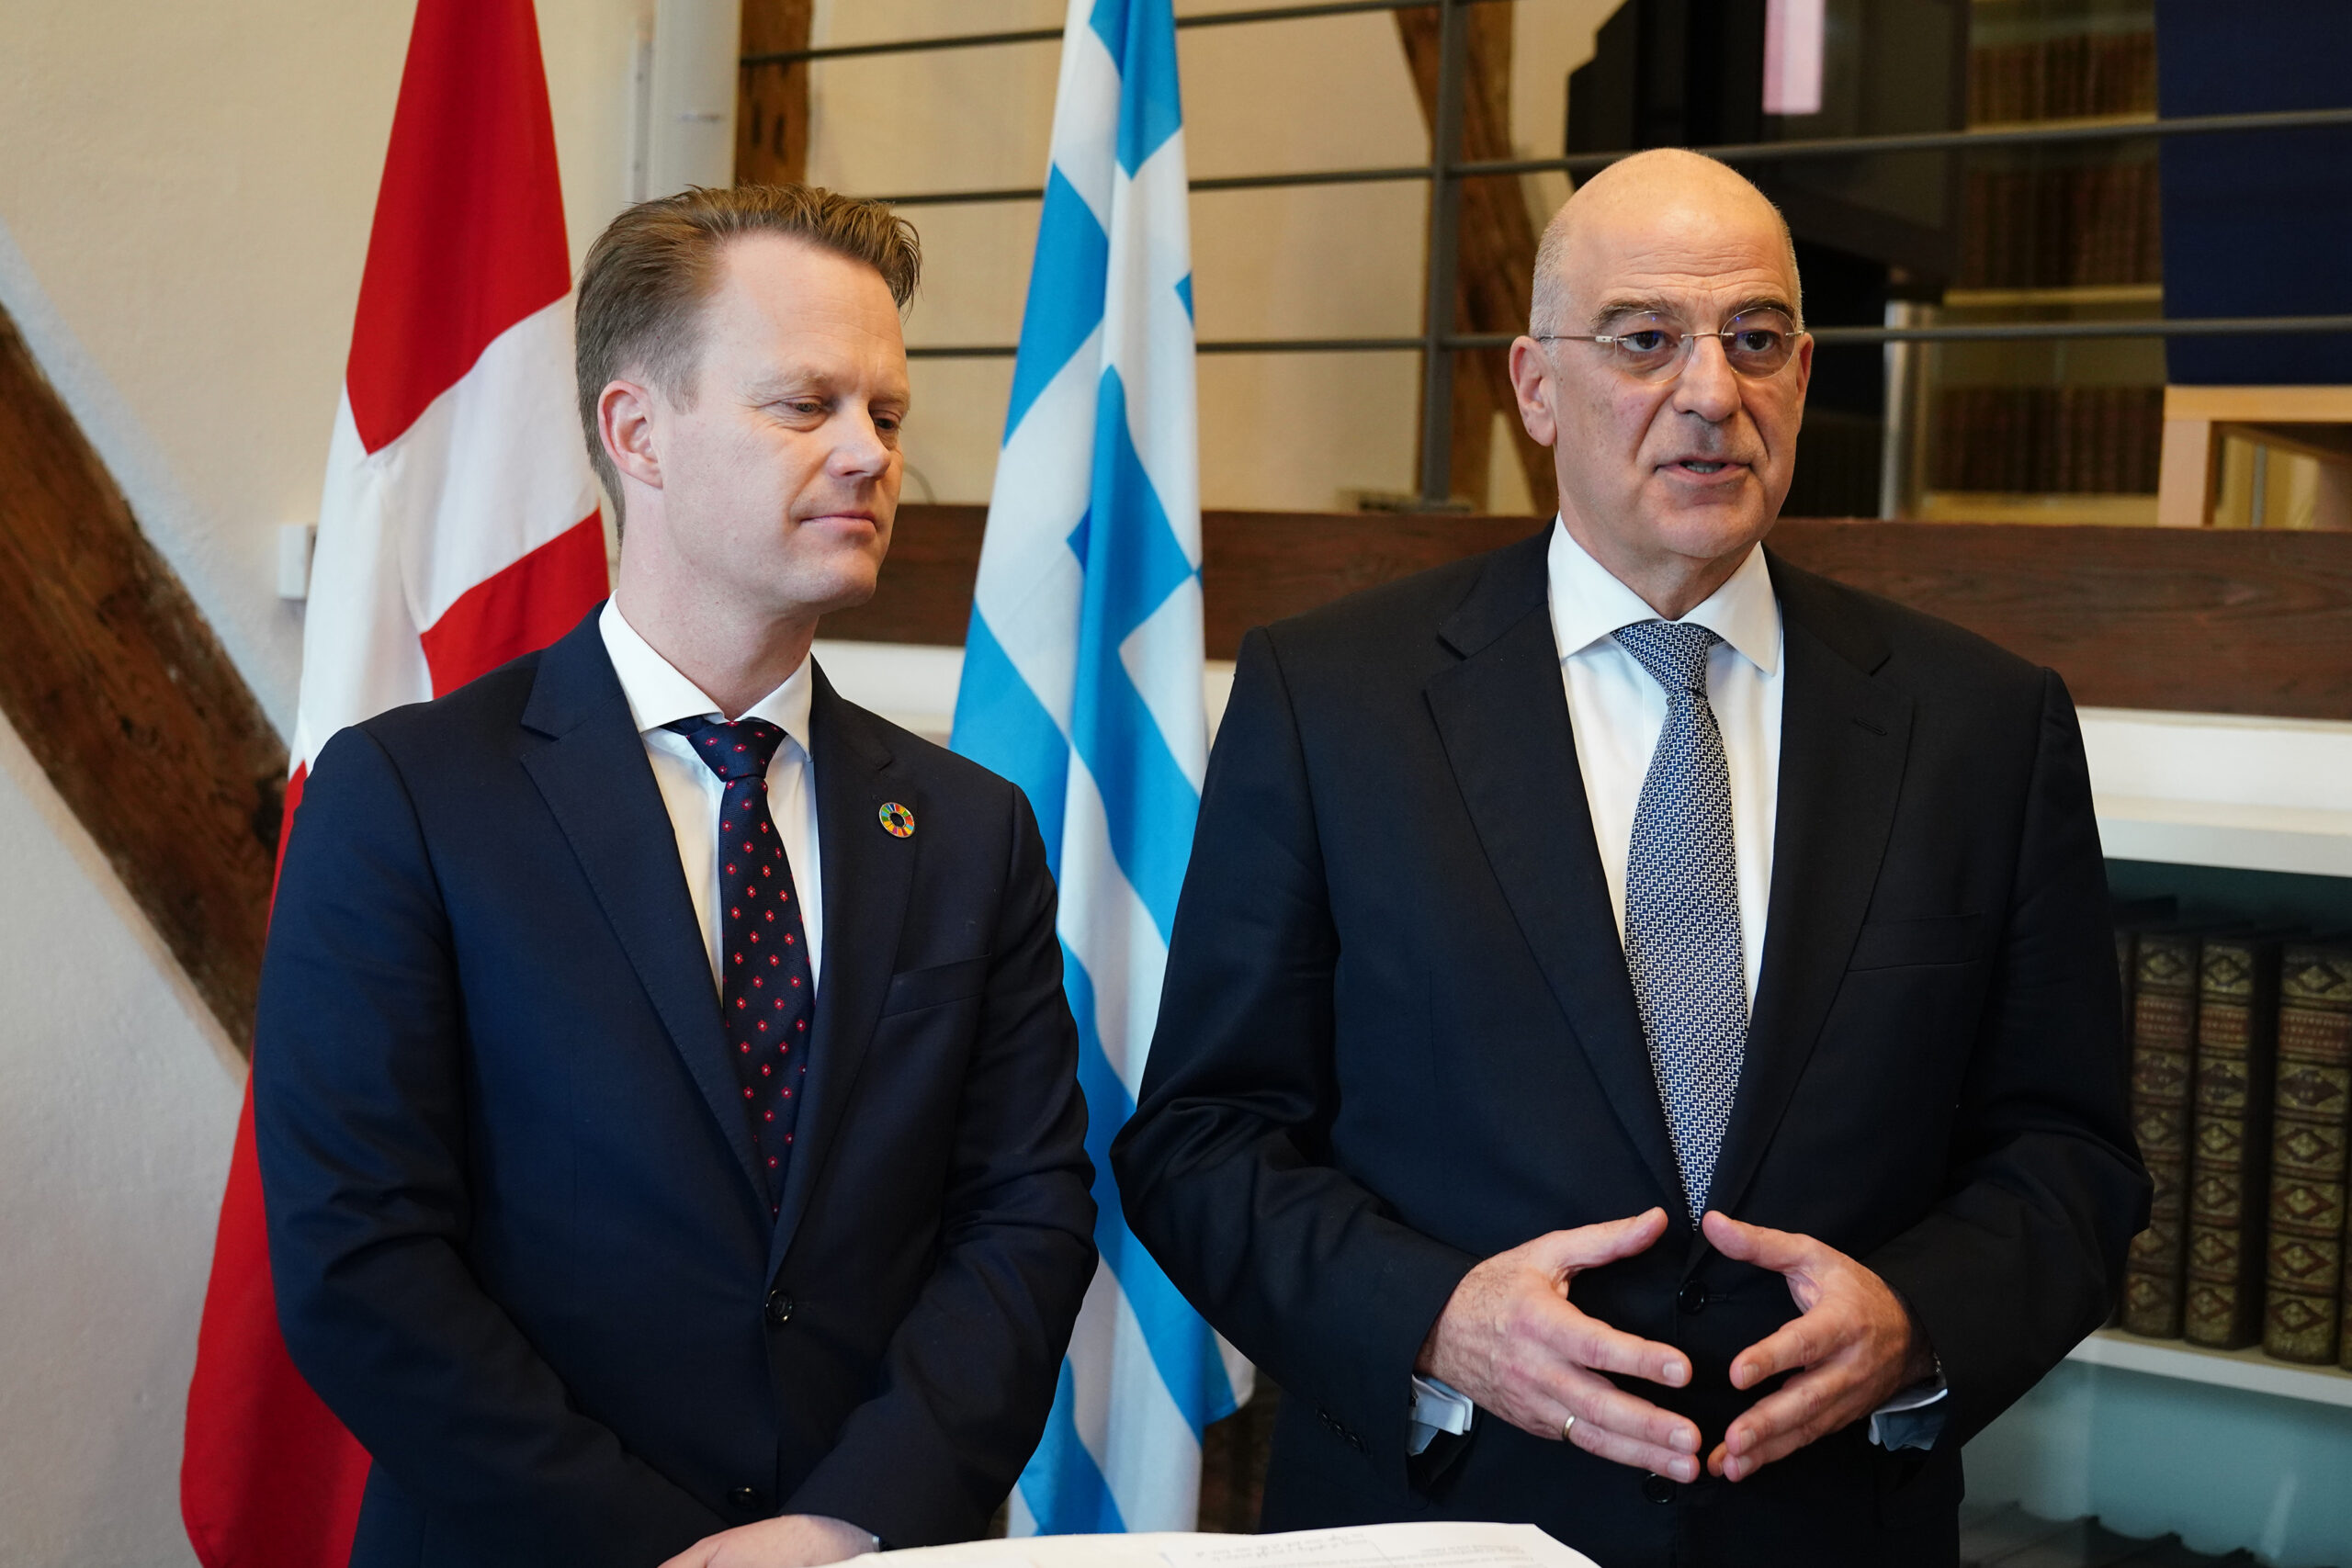 (Ξένη Δημοσίευση)   Ο υπουργός Εξωτερικών της Δανίας, Jeppe Kofod (Α) με τον υπουργό Εξωτερικών Νίκο Δένδια (Δ), κατά τη διάρκεια των κοινών δηλώσεων μετά τη συνάντησή τους, στην  Κοπεγχάγη, την Παρασκευή 21 Φεβρουαρίου 2020.  Στην Κοπεγχάγη μετέβη σήμερα ο υπουργός Εξωτερικών, όπου συναντήθηκε με τον υπουργό Εξωτερικών της Δανίας Jeppe Kofod. Σύμφωνα με ανακοίνωση του υπουργείου Εξωτερικών, οι συνομιλίες περιλάμβαναν πτυχές των διμερών σχέσεων, περιφερειακά ζητήματα κοινού ενδιαφέροντος, όπως η μετανάστευση, η ενταξιακή προοπτική των Δυτικών Βαλκανίων και η κατάσταση στην Ανατολική Μεσόγειο, αλλά και ζητήματα παγκόσμιου ενδιαφέροντος, όπως η κλιματική αλλαγή και η αξιοποίηση των ανανεώσιμων πηγών ενέργειας. Ο υπουργός Εξωτερικών, θα συναντηθεί επίσης, με αντιπροσωπεία του συνδέσμου βιομηχάνων της χώρας, υπό τον εκτελεστικό του διευθυντή, Τόμας Μπούστρουπ. ΑΠΕ-ΜΠΕ/ΓΡΑΦΕΙΟ ΤΥΠΟΥ ΥΠΕΞ/ΧΑΡΗΣ ΑΚΡΙΒΙΑΔΗΣ